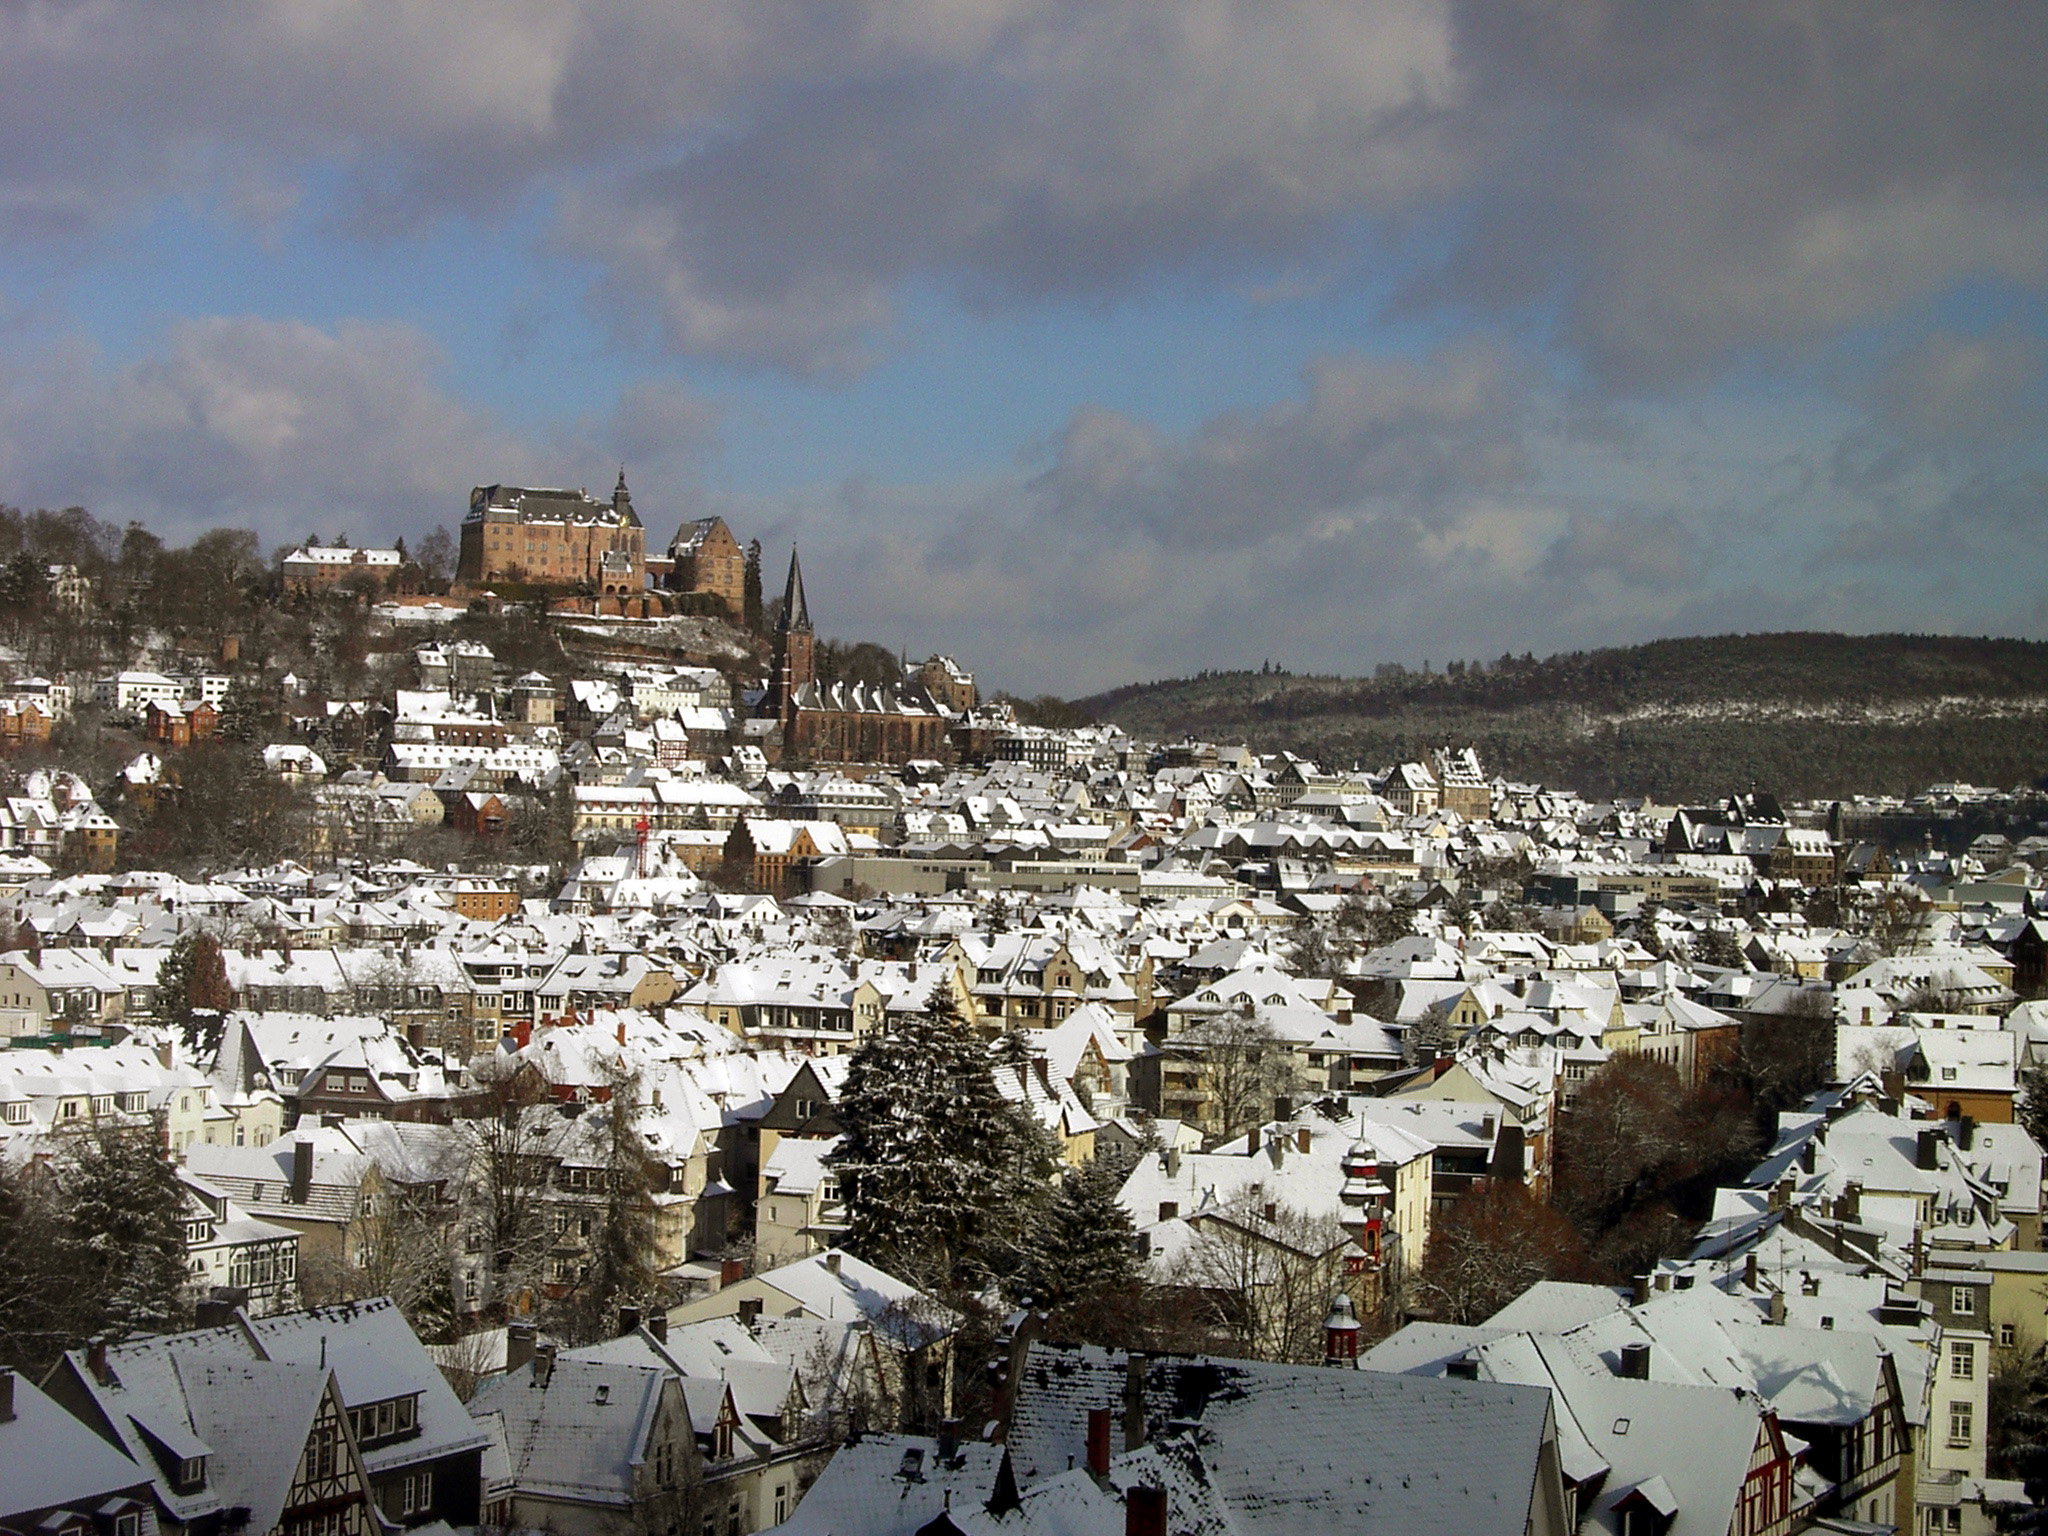 Marburgo - Wikipedia, la enciclopedia libre